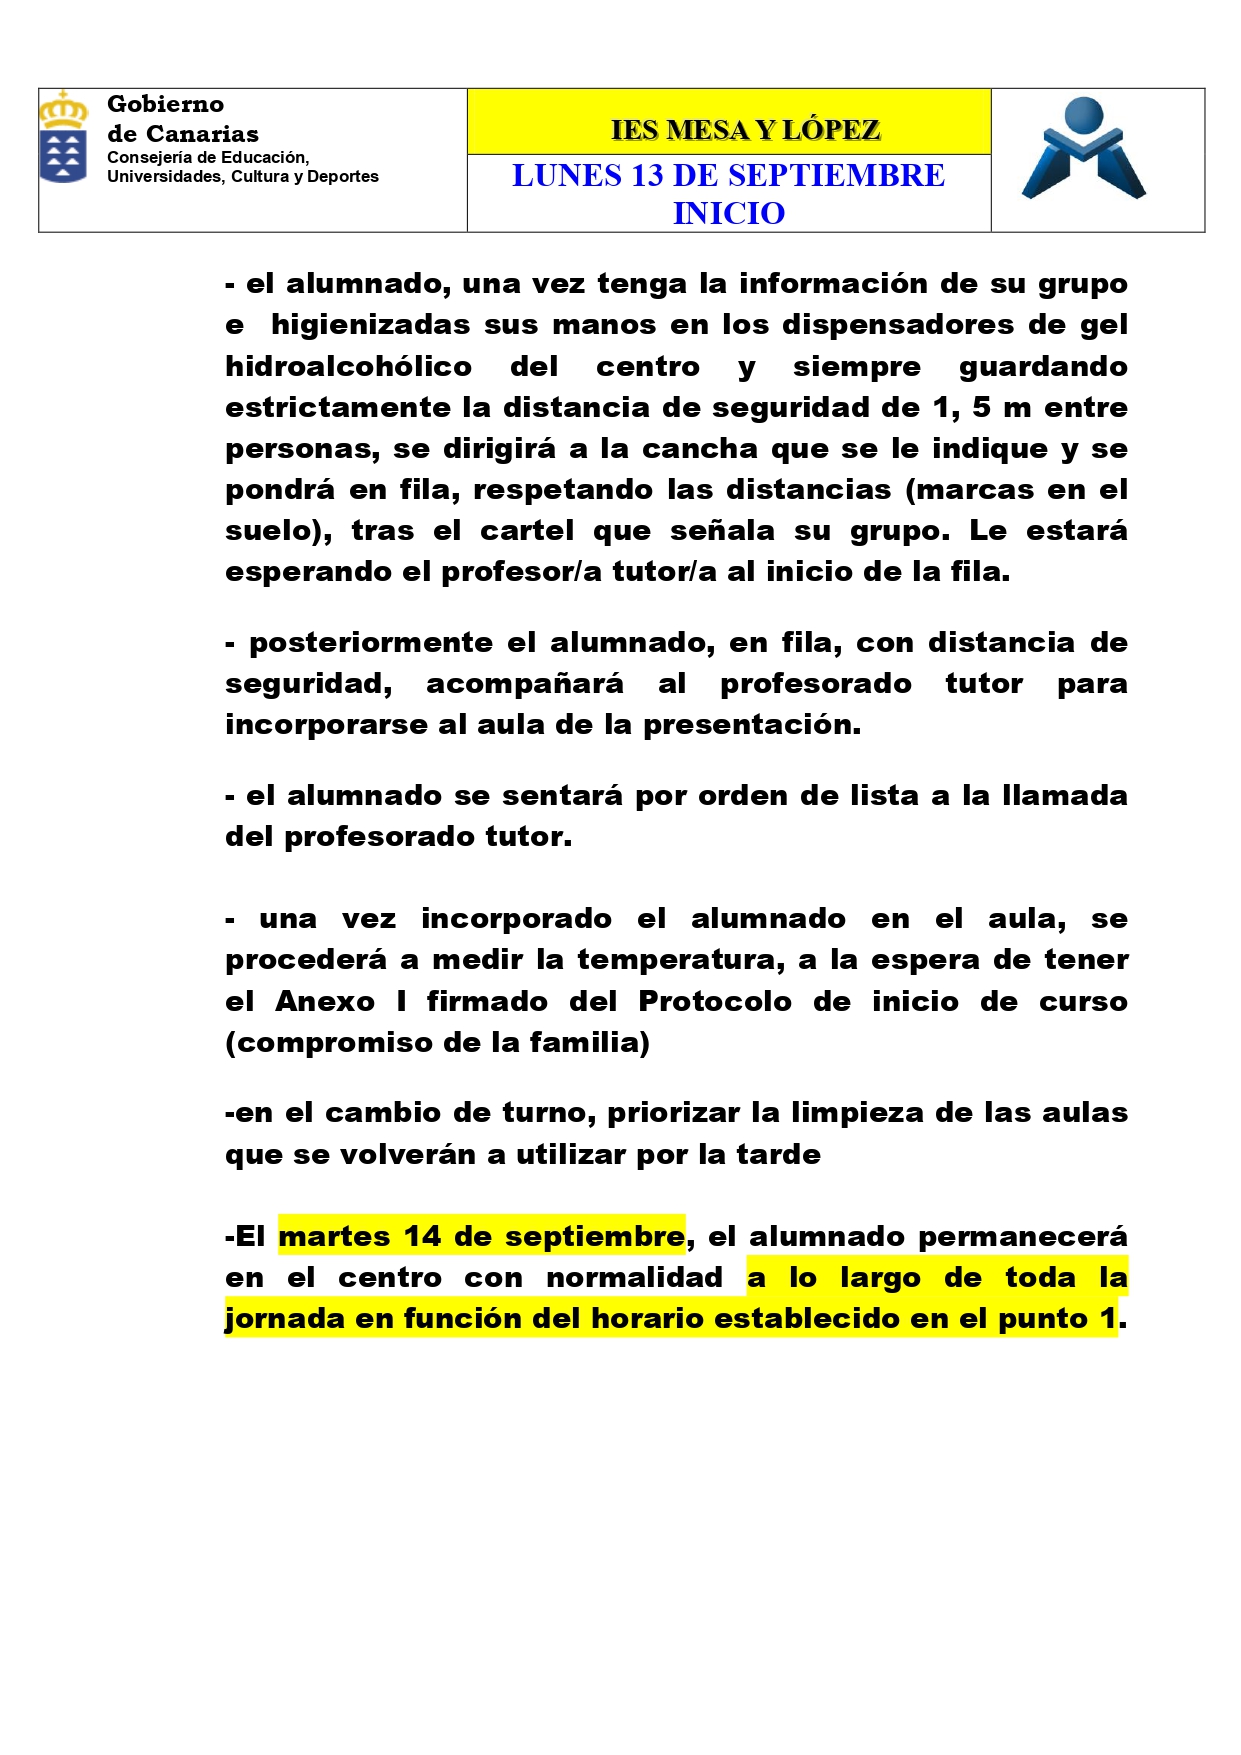 PRESENTACIONES E INICIO DE CLASES 13 SEPTIEMBRE page 0005